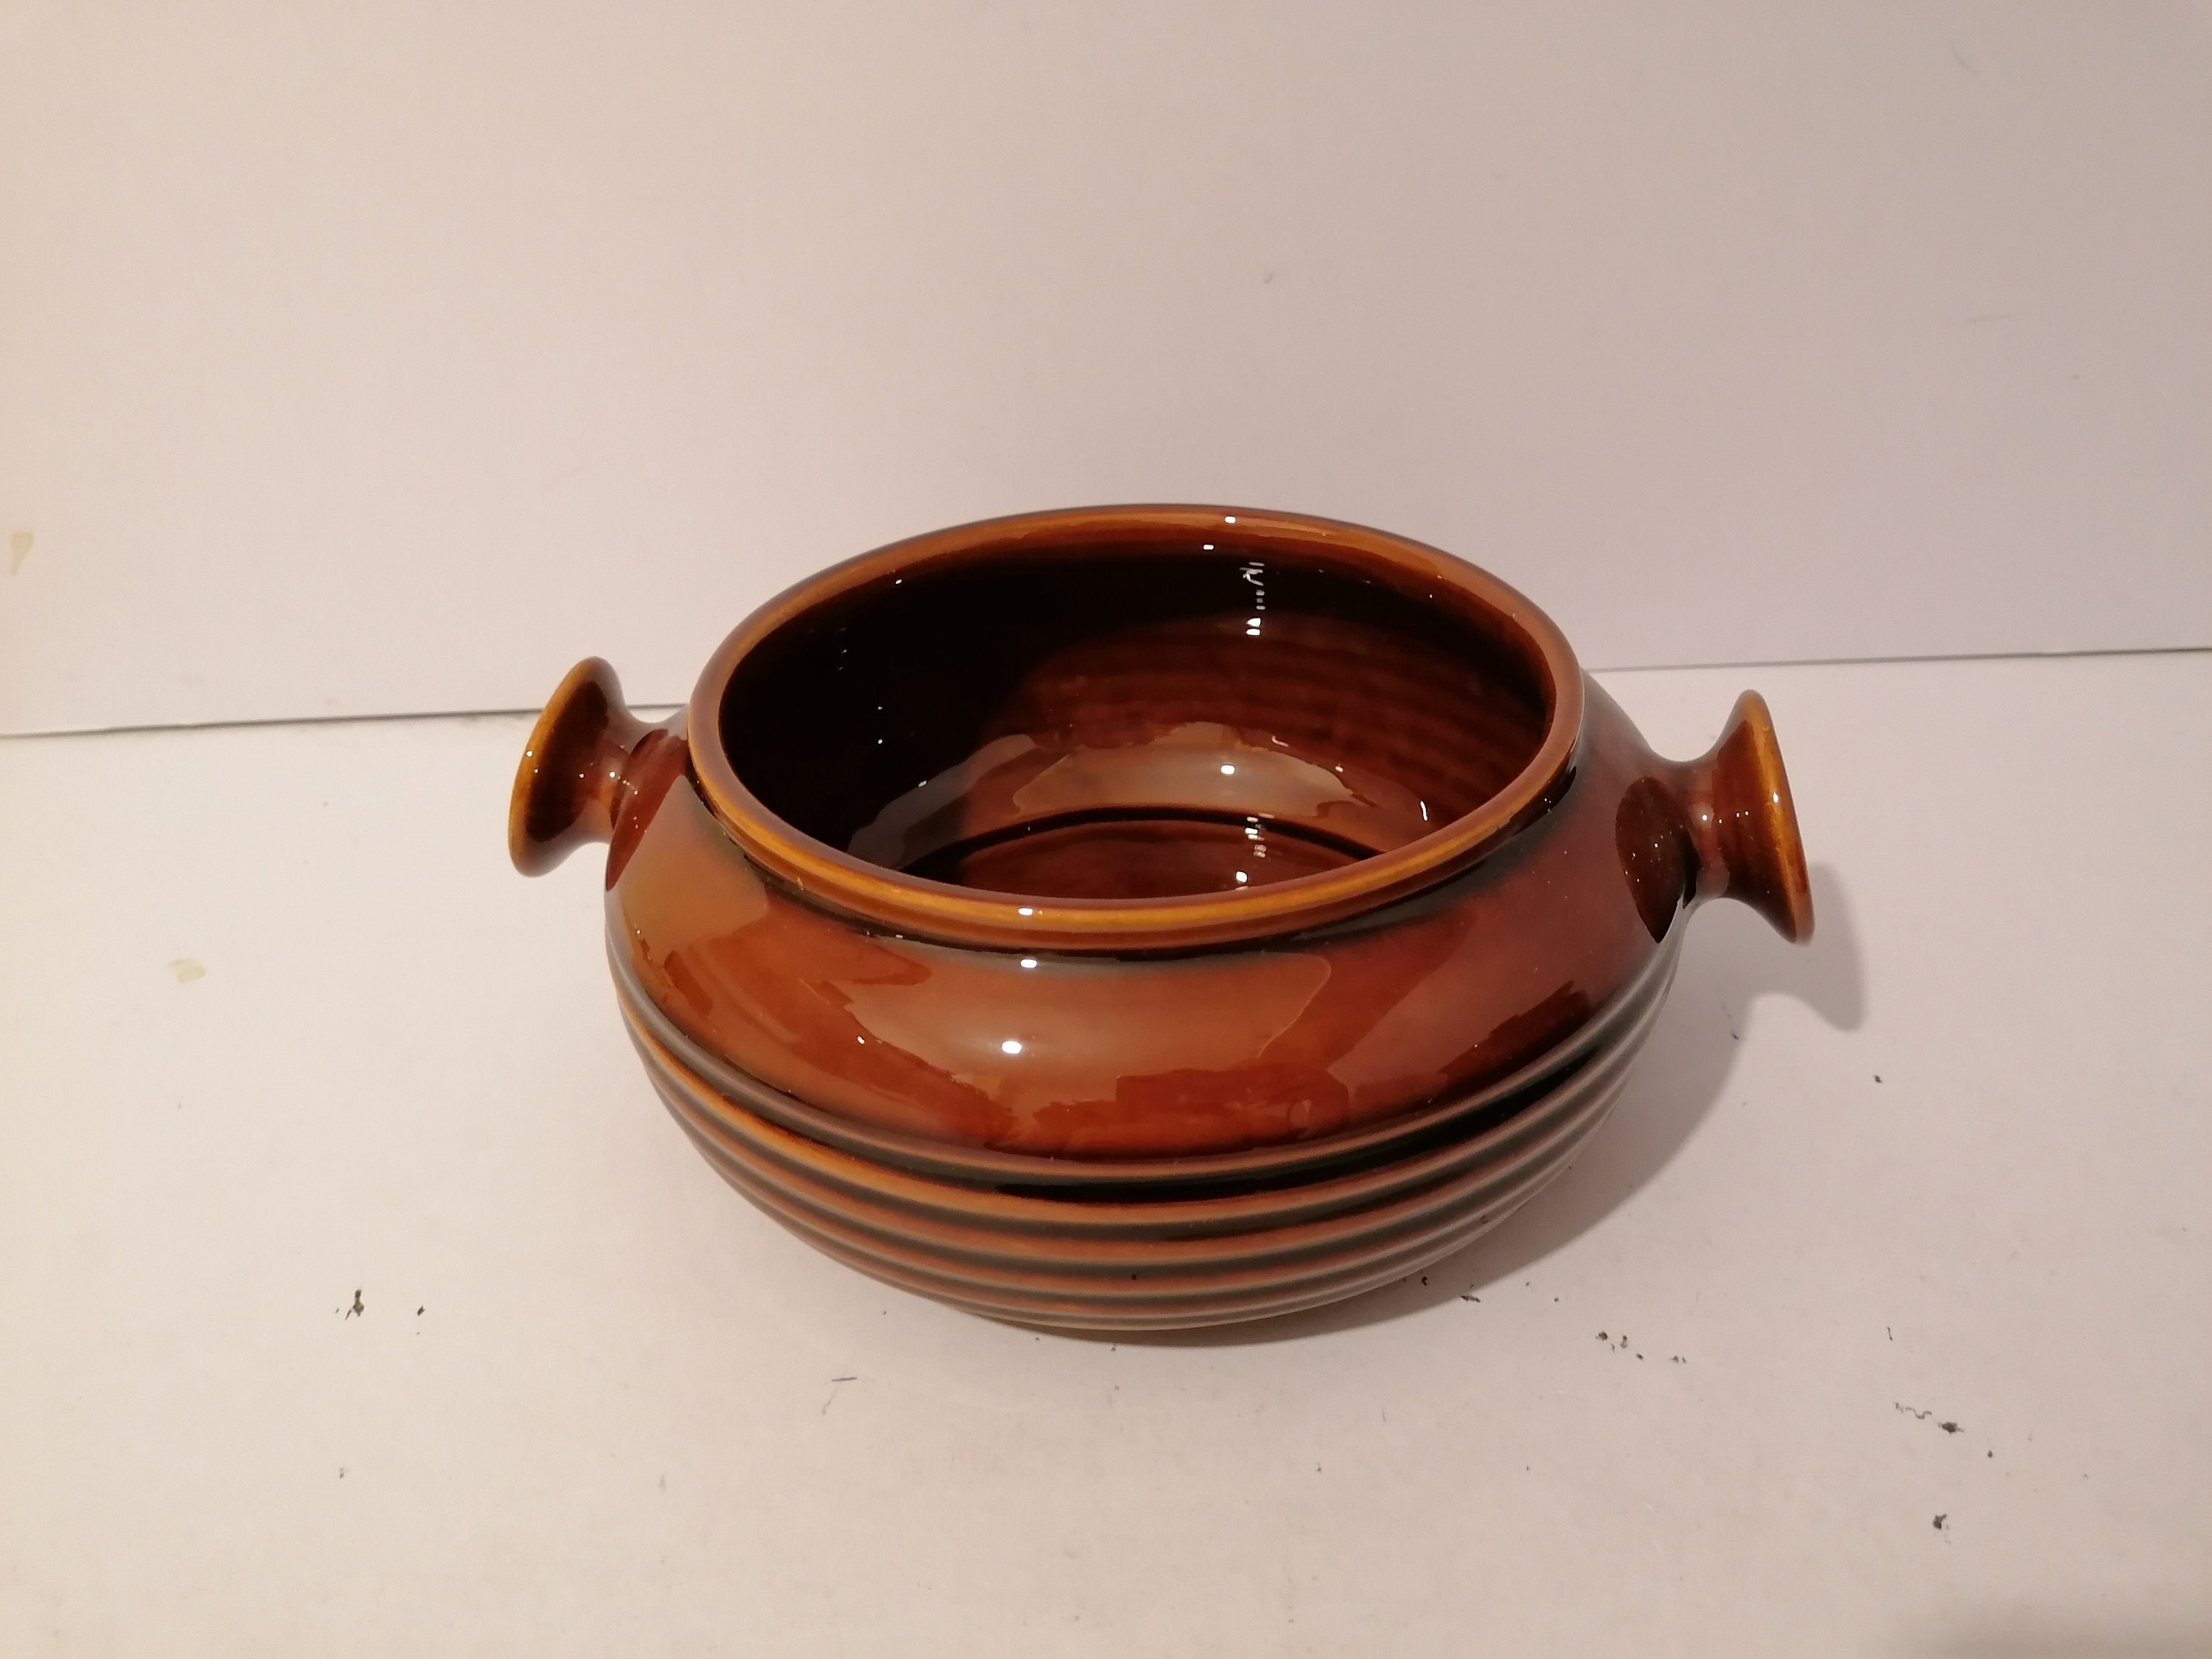 denmead poterie brun treacle casserole four plat sans couvercle tureen uvette bol de service 22cm large